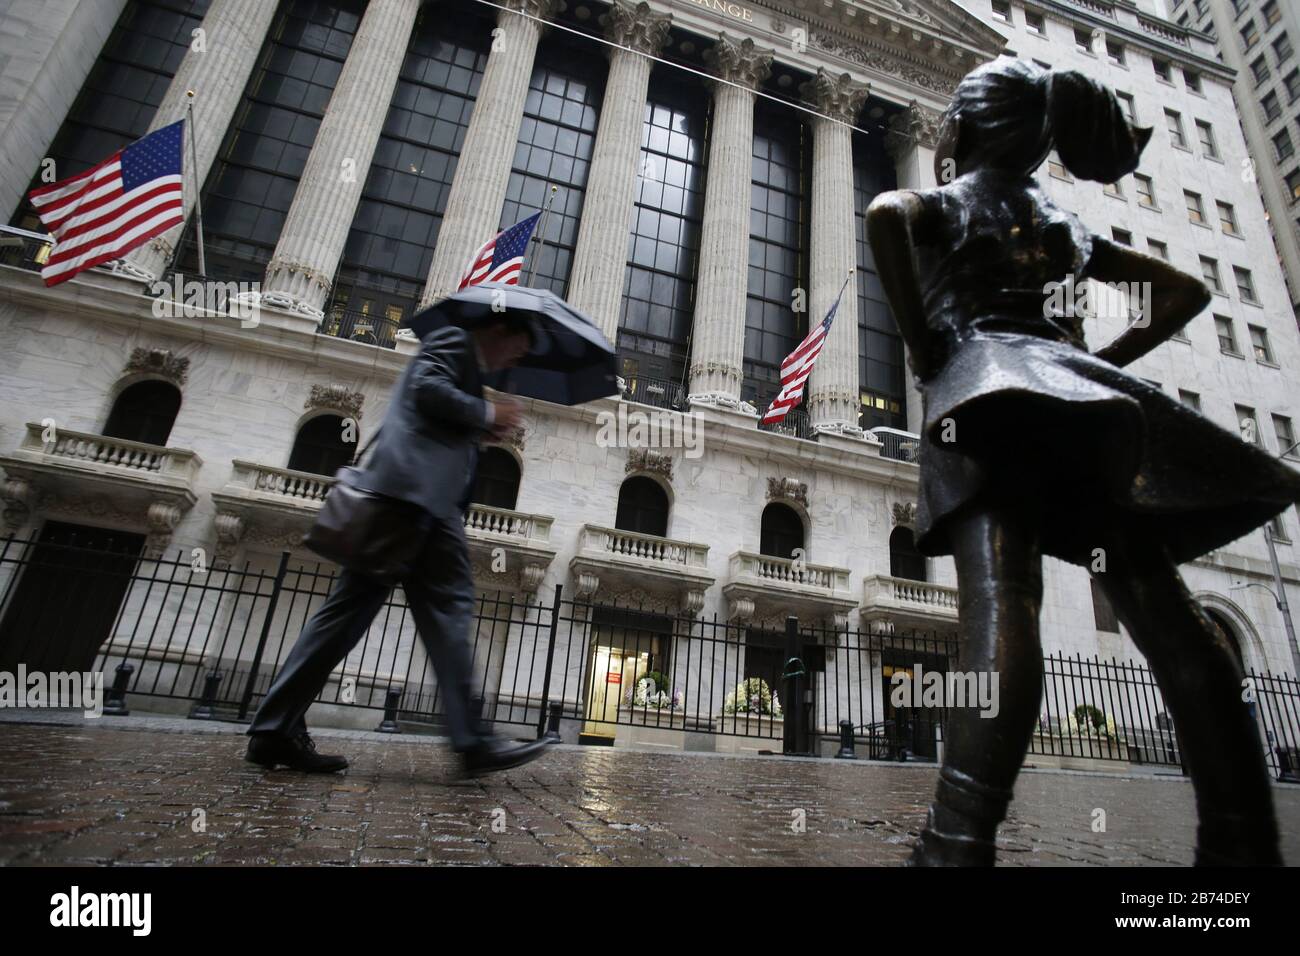 Nueva York, Estados Unidos. 13 de marzo de 2020. Un peatón sostiene un paraguas mientras camina por la Bolsa de valores de Nueva York en Wall Street en la ciudad de Nueva York el viernes, 13 de marzo de 2020. Las acciones cedieron la mayor parte de un repunte inicial el viernes, intentando recuperarse de las fuertes pérdidas de la sesión anterior, con el Dow Jones Industrial Average por debajo de 2000 puntos y 10 por ciento, que fue el peor desde la caída del mercado del "lunes negro" en 1987. Foto de John Angelillo/UPI crédito: UPI/Alamy Live News Foto de stock